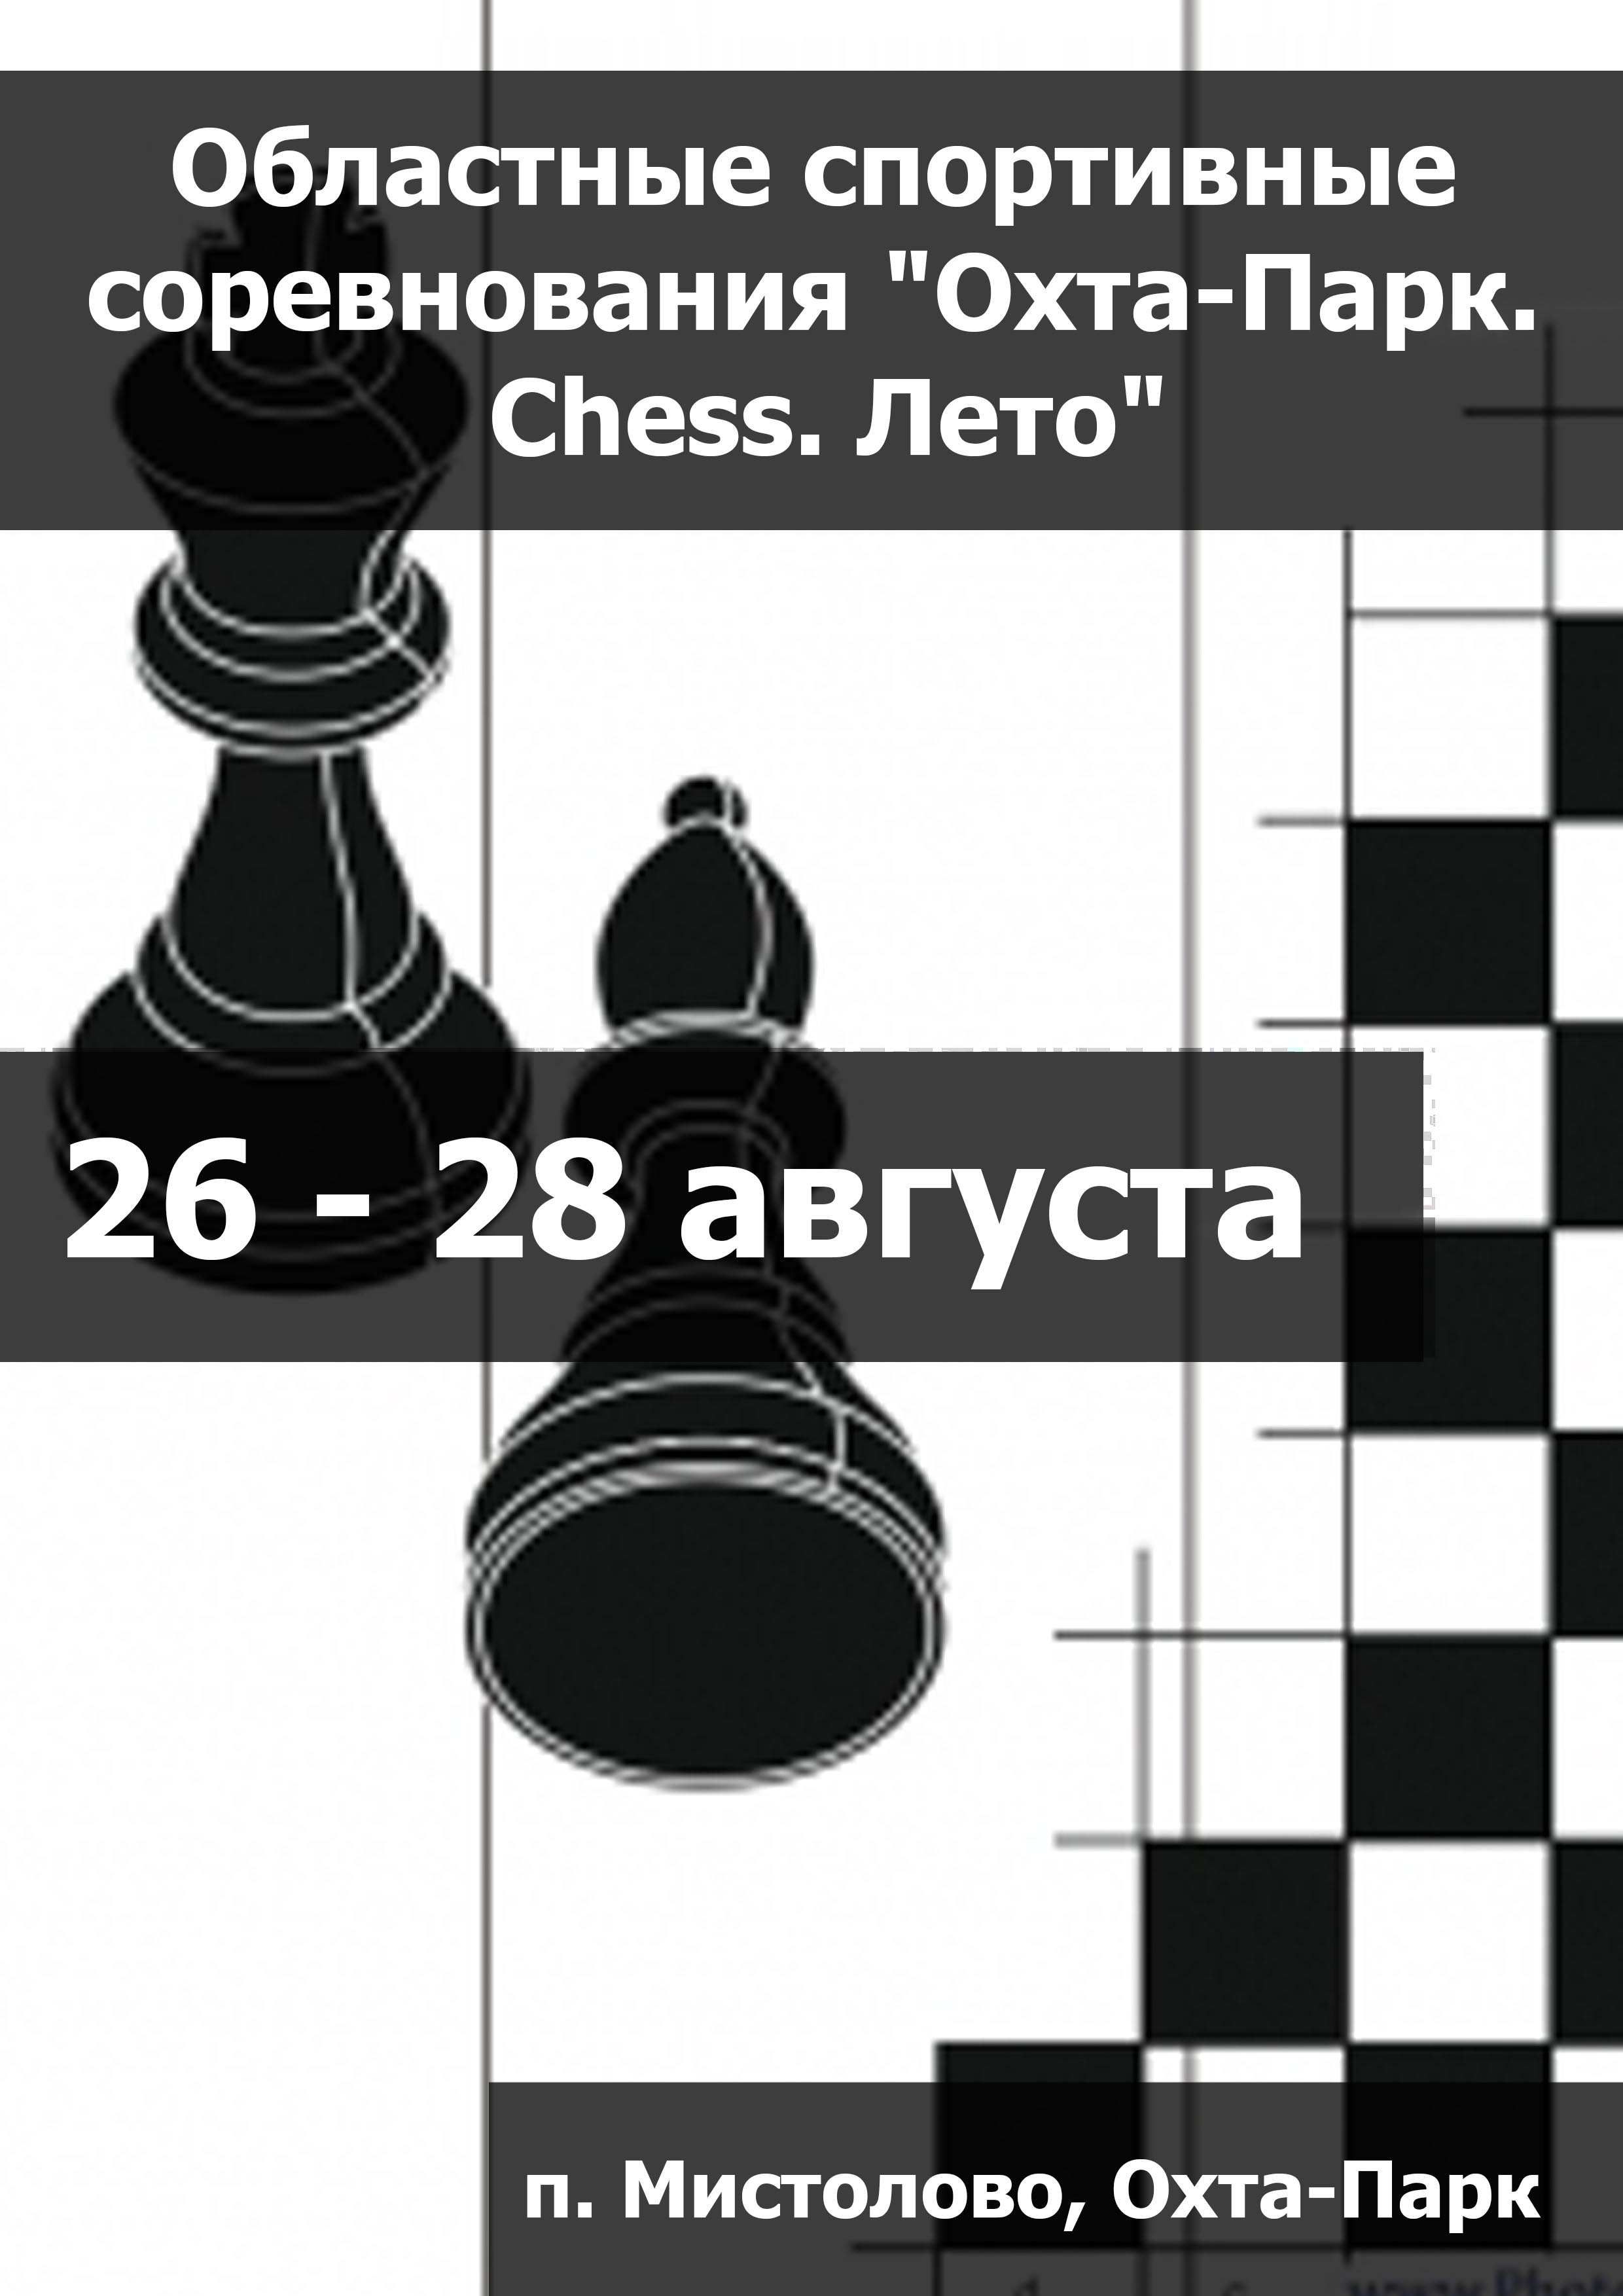 Областные спортивные соревнования "Охта-Парк. Chess. Лето" 26  август
 2023  соли
 